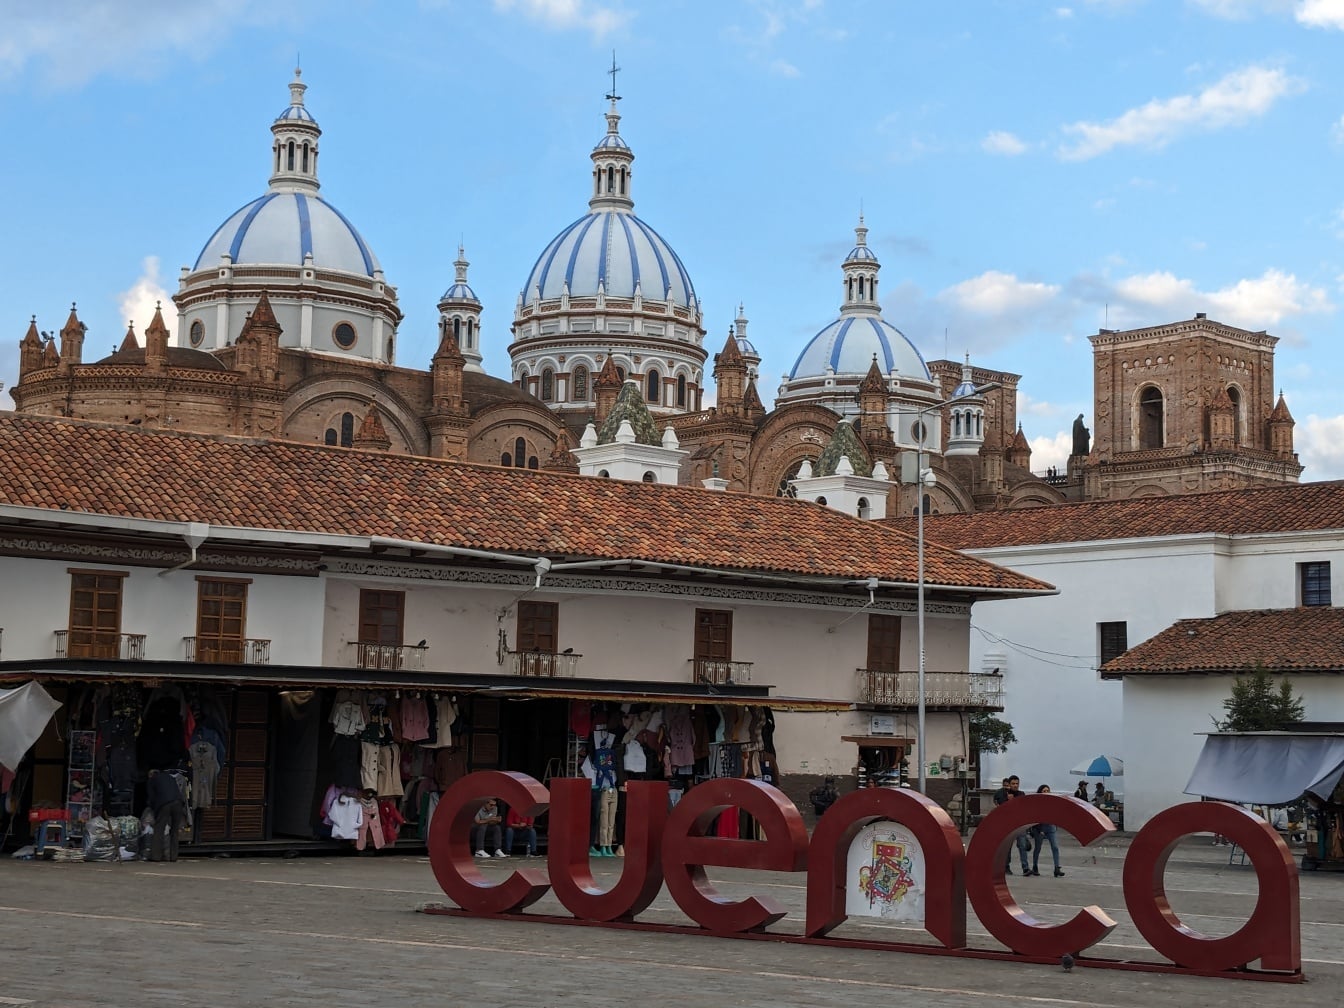 Plaza San Francisco en el centro de Cuenca en Ecuador, lugar declarado Patrimonio de la Humanidad por la UNESCO